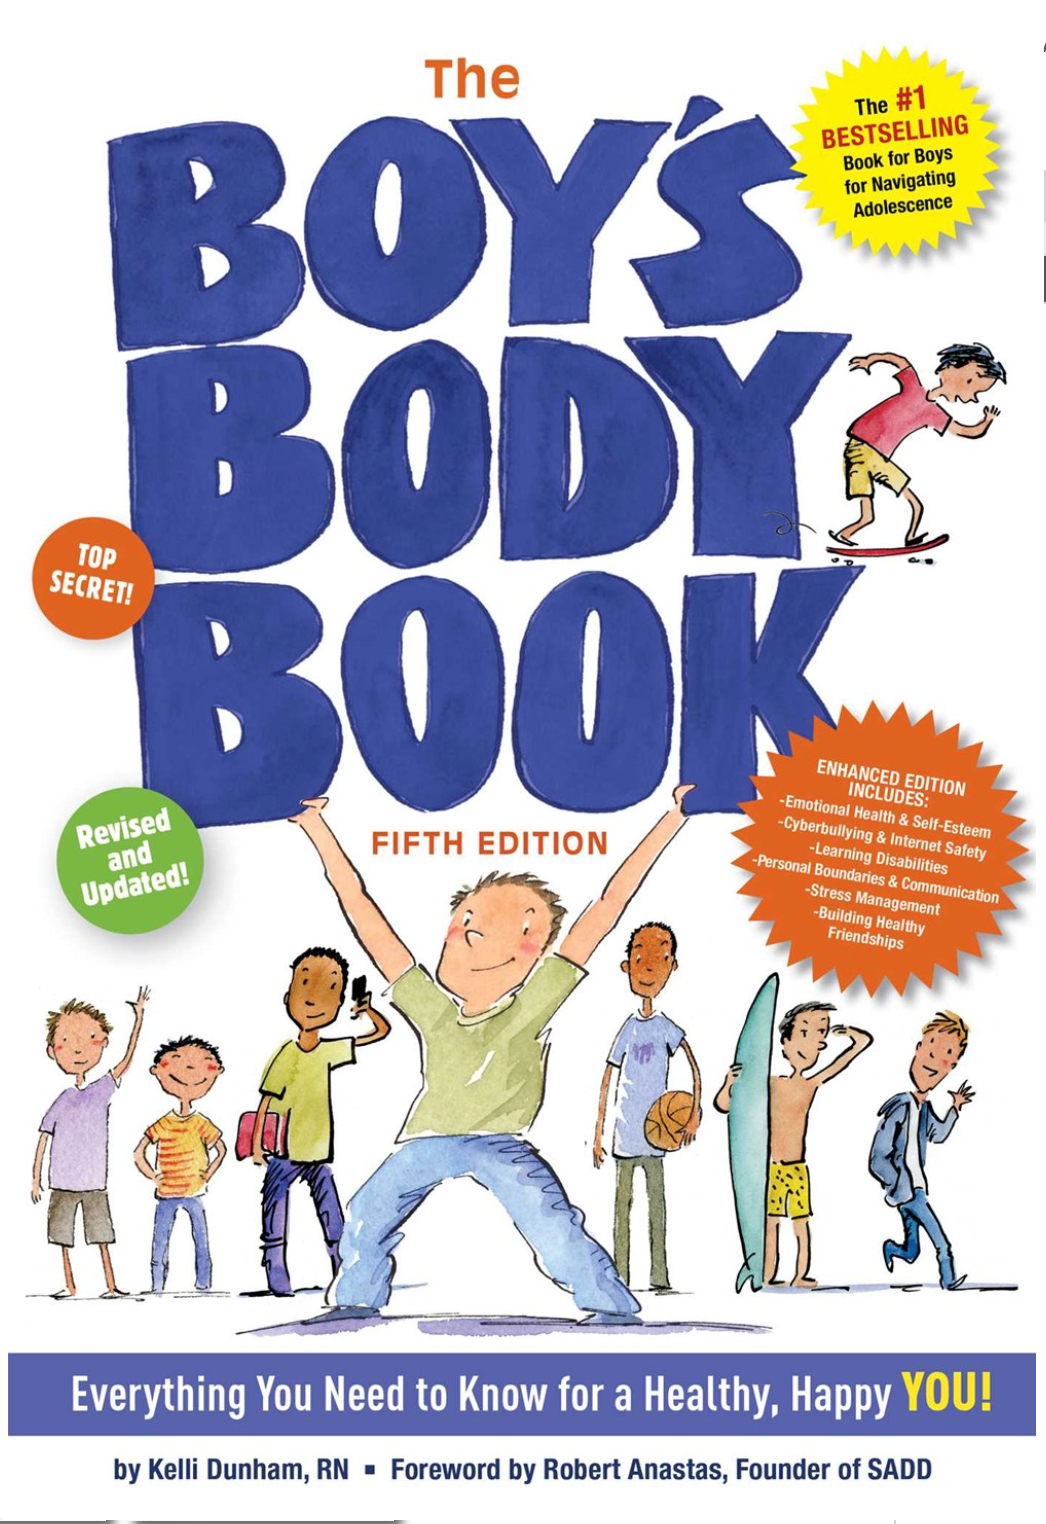 The Boys Body Book